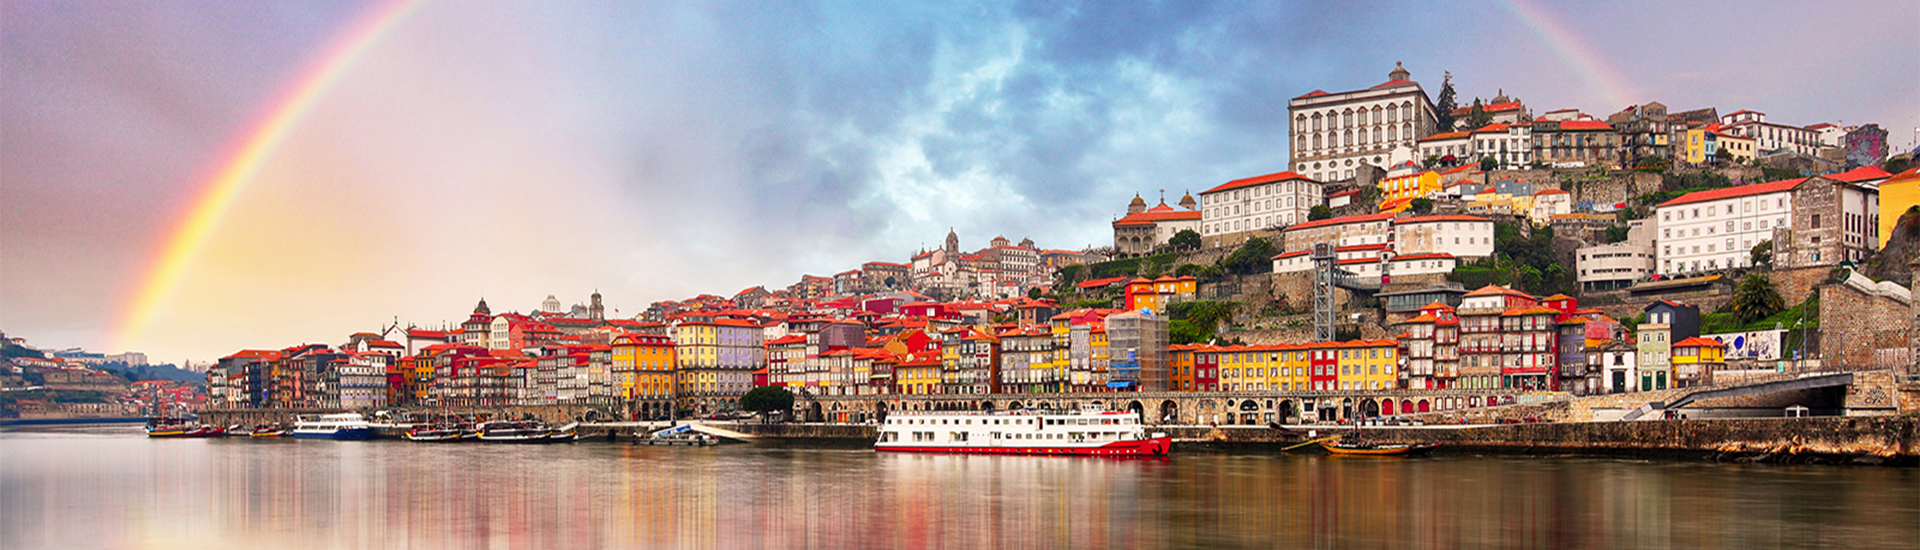 歐洲旅遊-葡萄牙